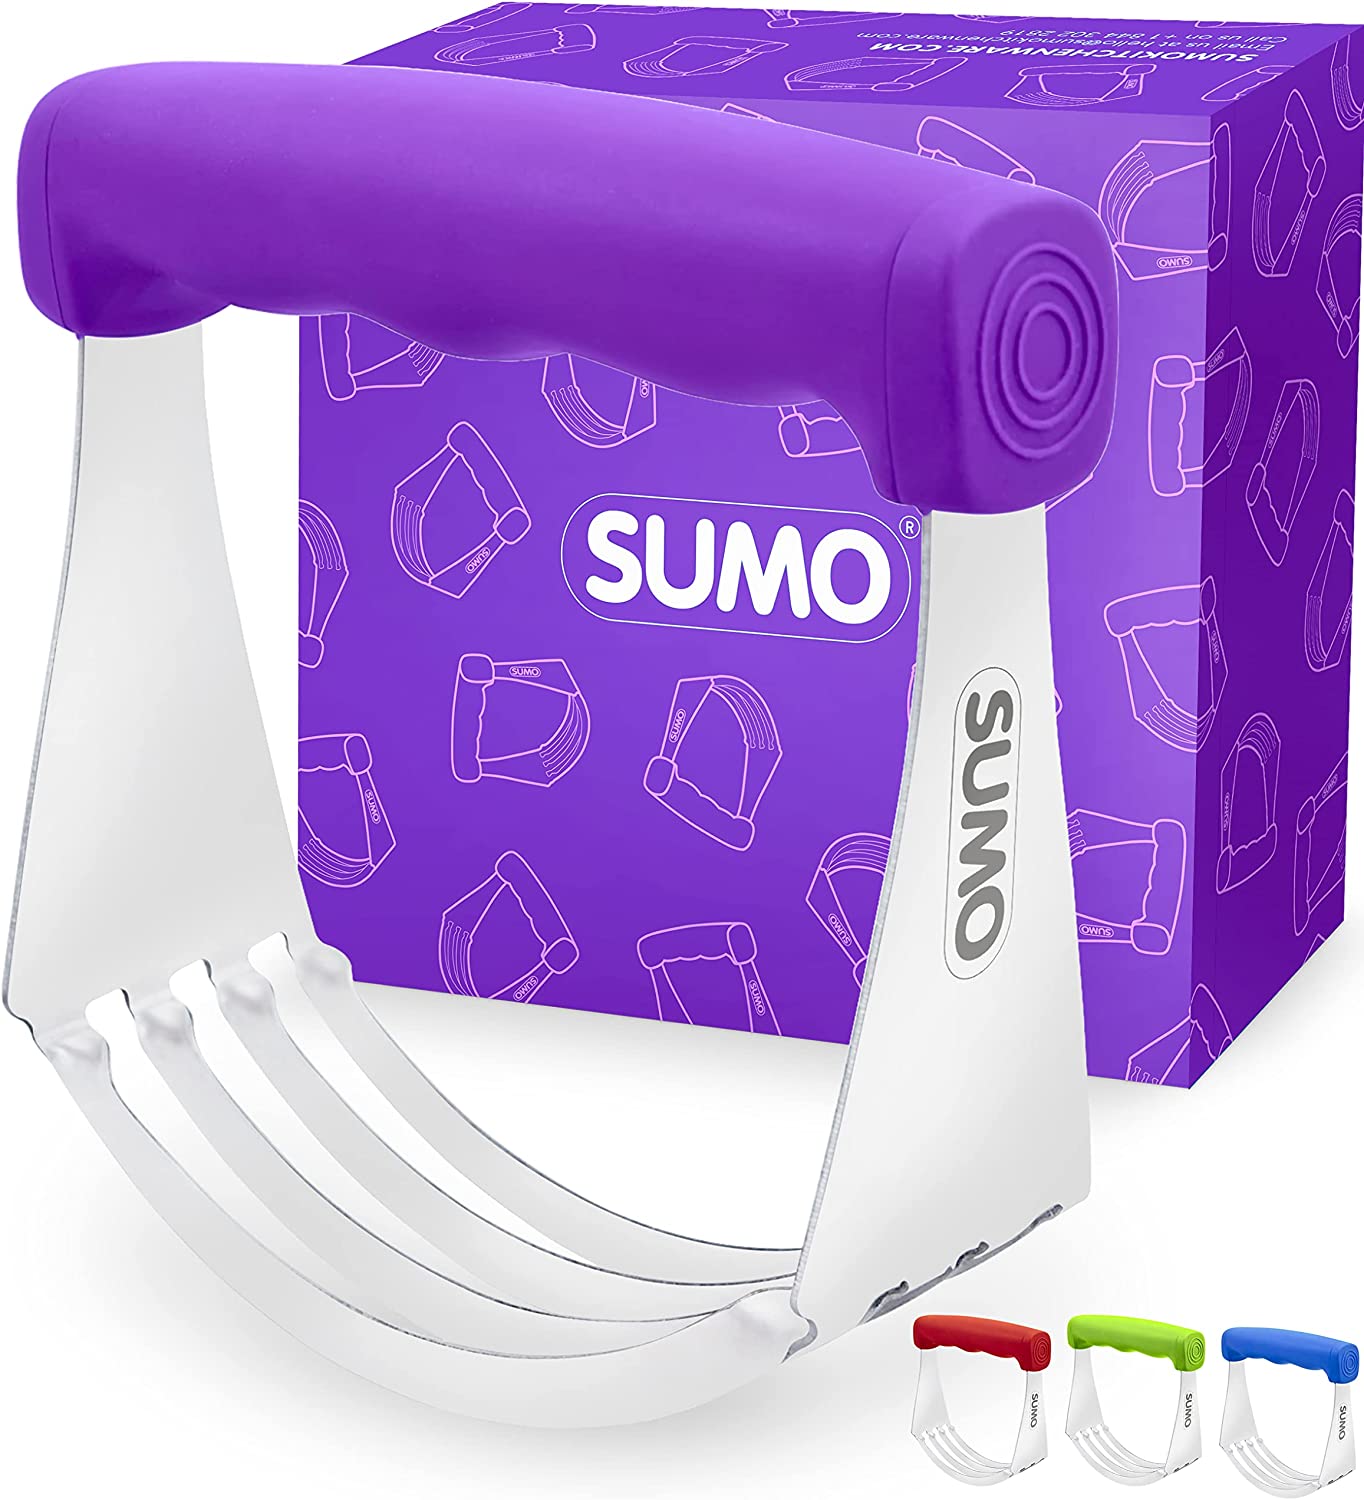 SUMO Premium Balanced Pastry Cutter